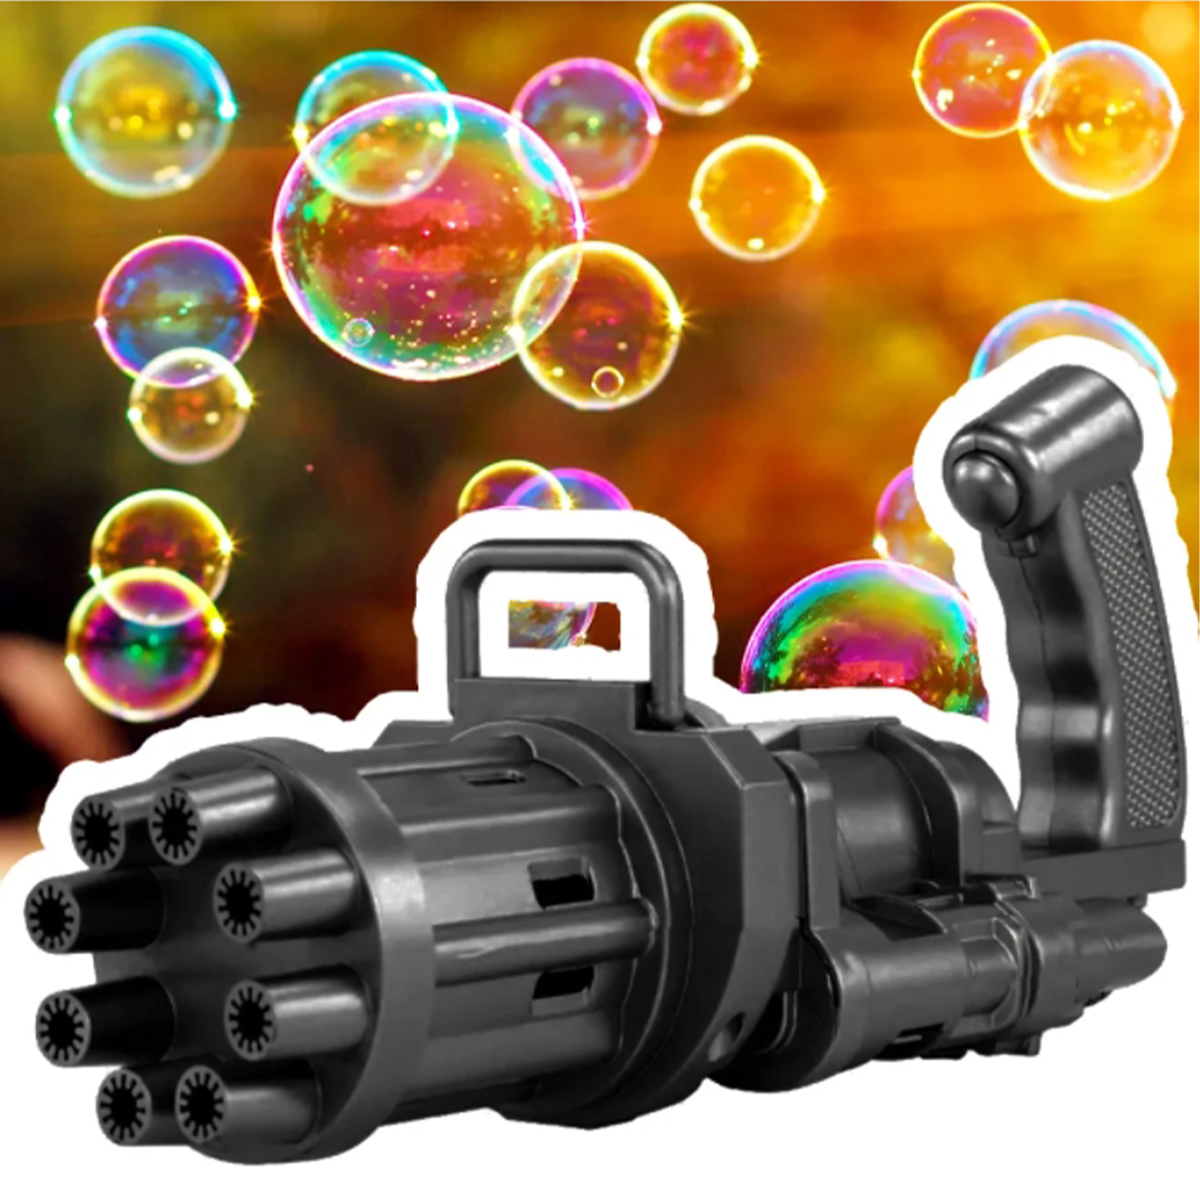 Bubble gun